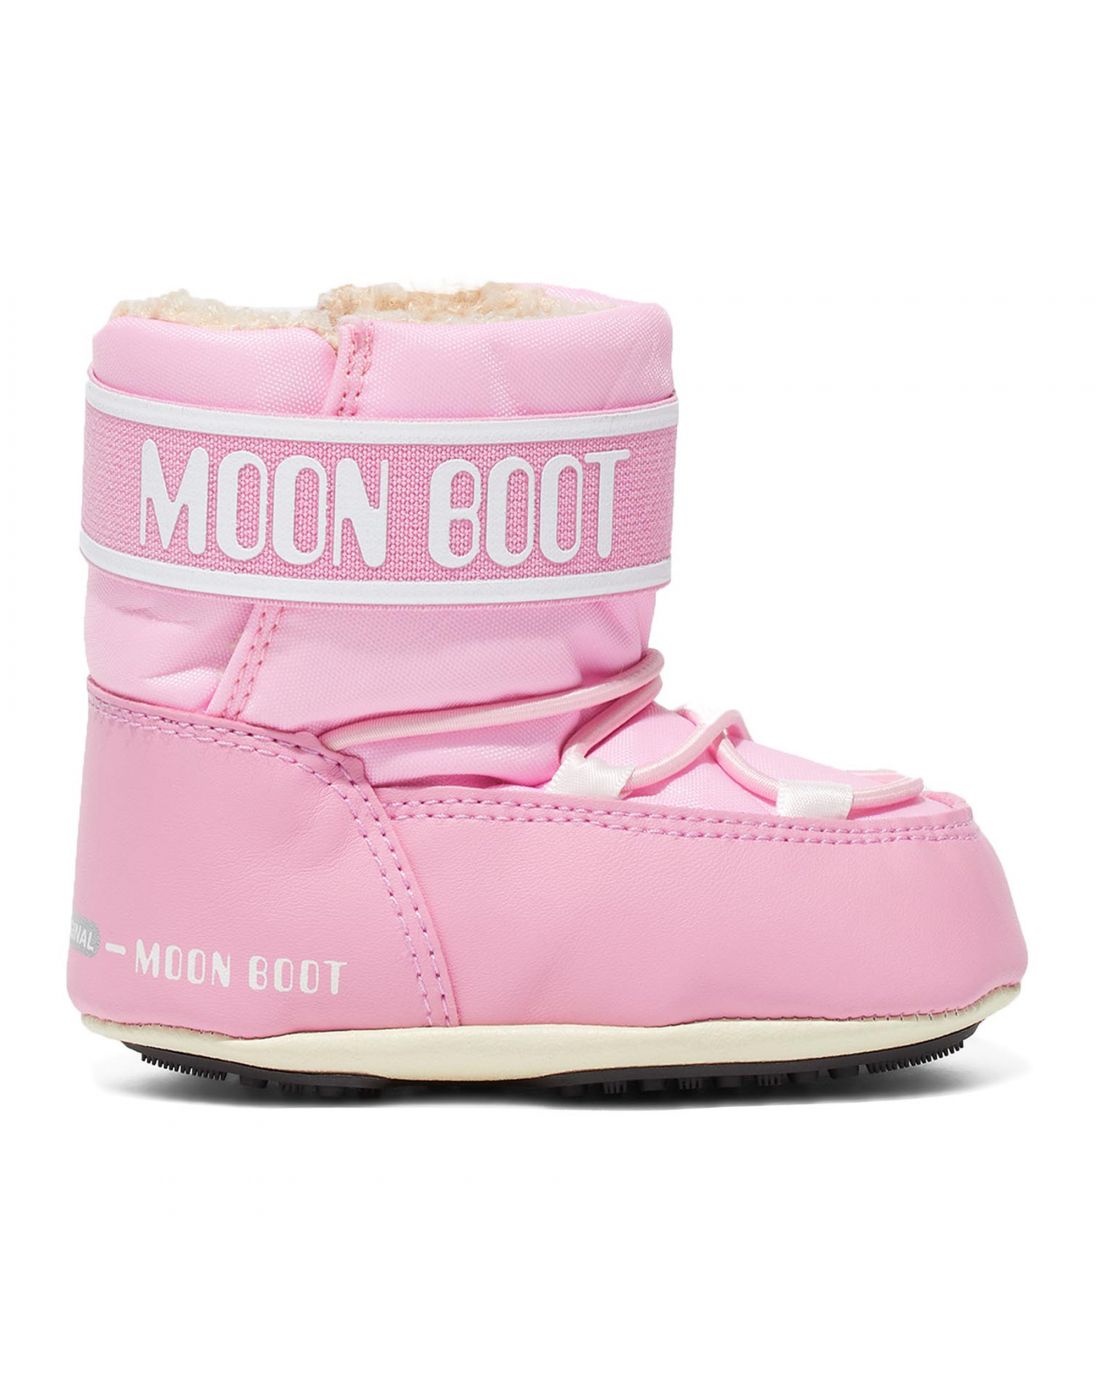 Βρεφικά Παπουτσάκια Αγκαλιάς Moon Boot, Moon Boot, 23270520 | LapinKids.com  | LAPIN KIDS